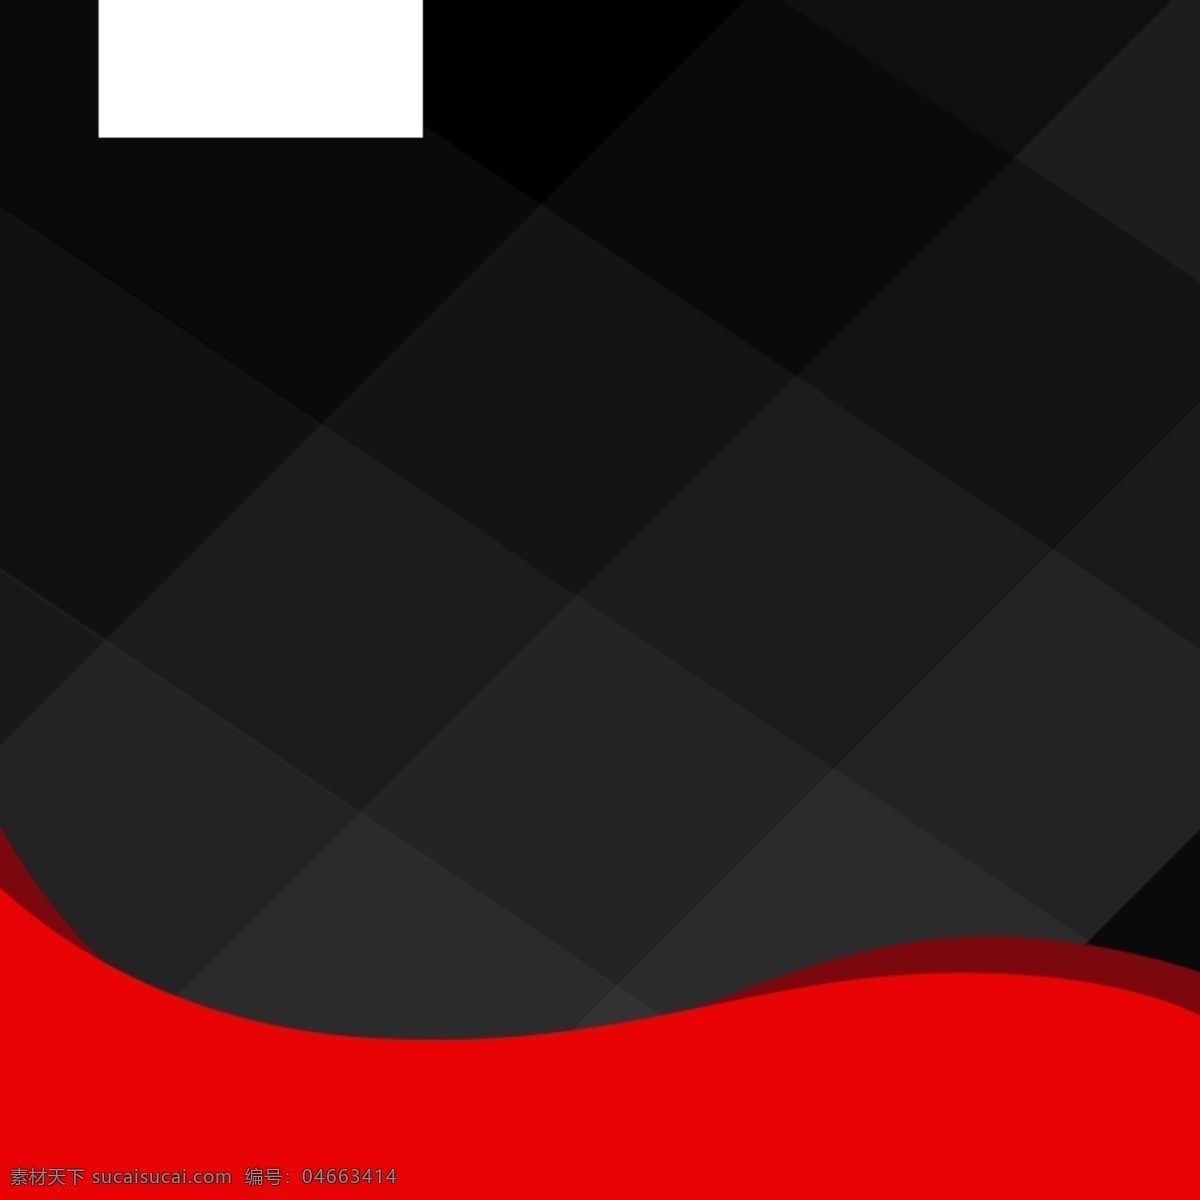 淘宝 黑红 扁平 主 图 背景 黑色 红色 主图 免费保修 电器 家电 数码 电饭煲 微波炉 促销 活动 直通车